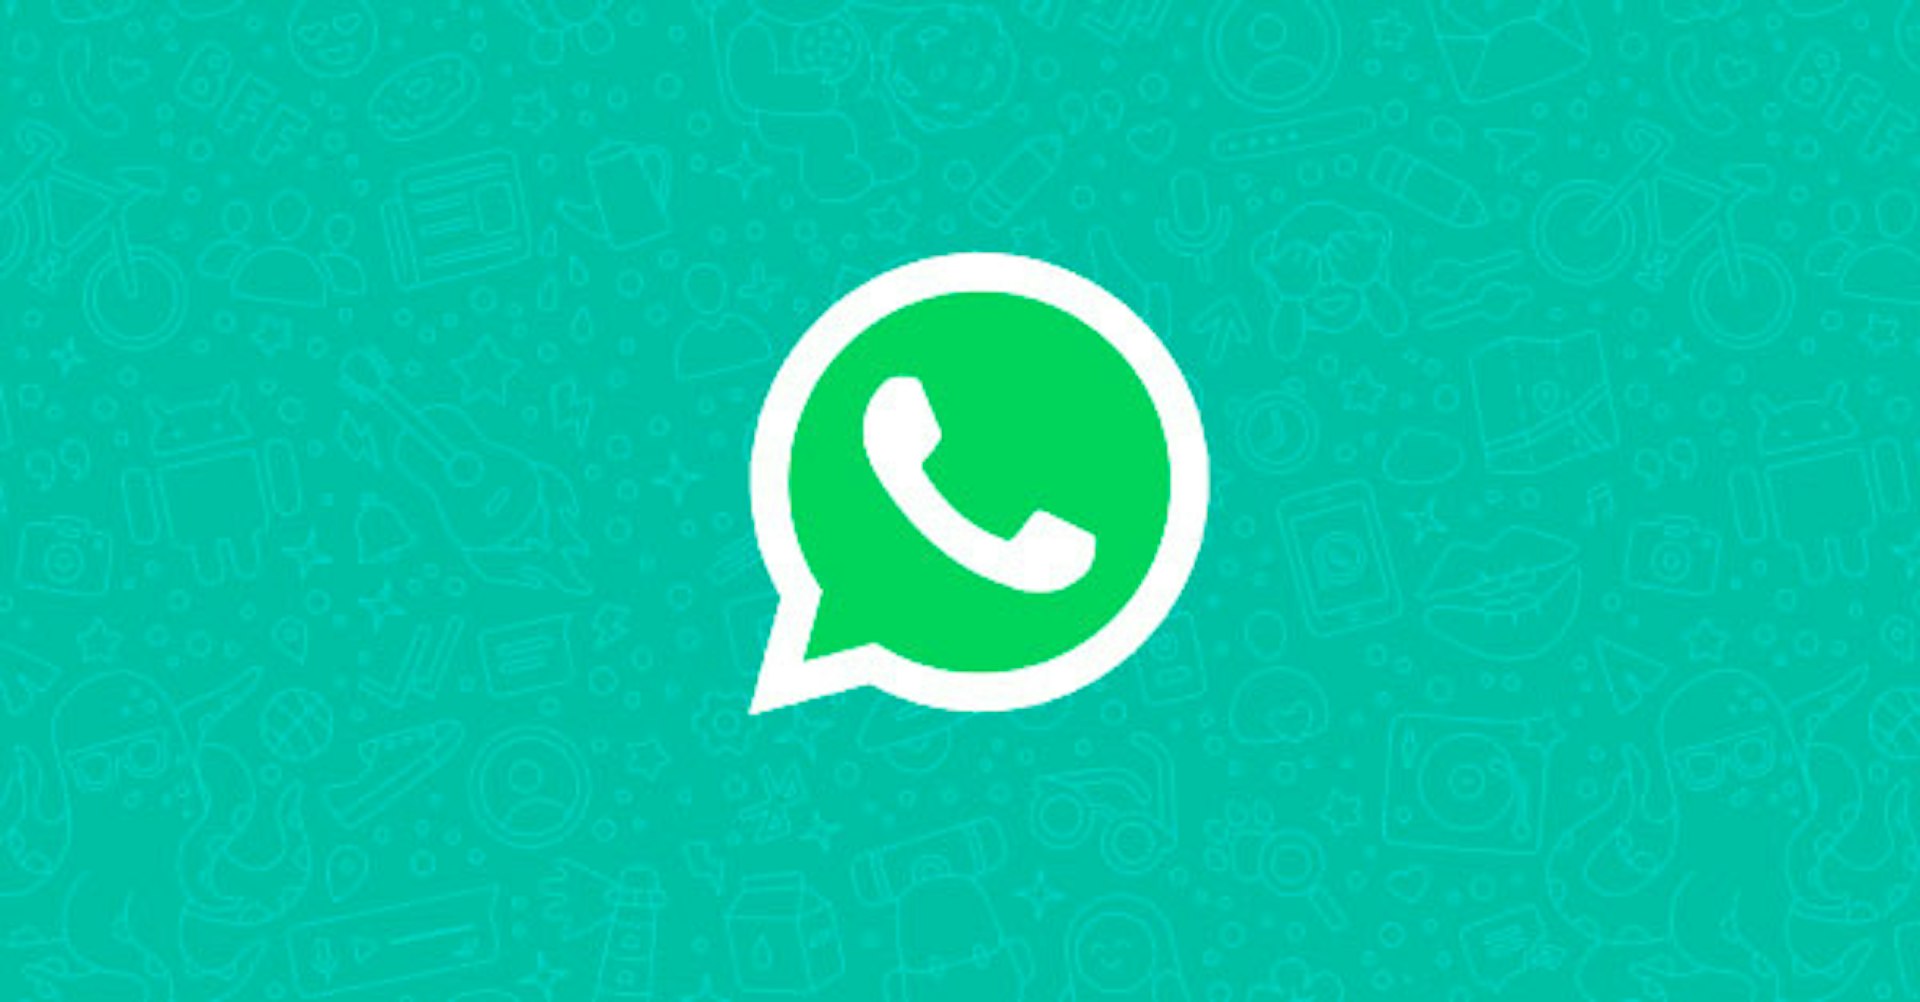 En 2019 Whatsapp tendrá publicidad y otros cambios